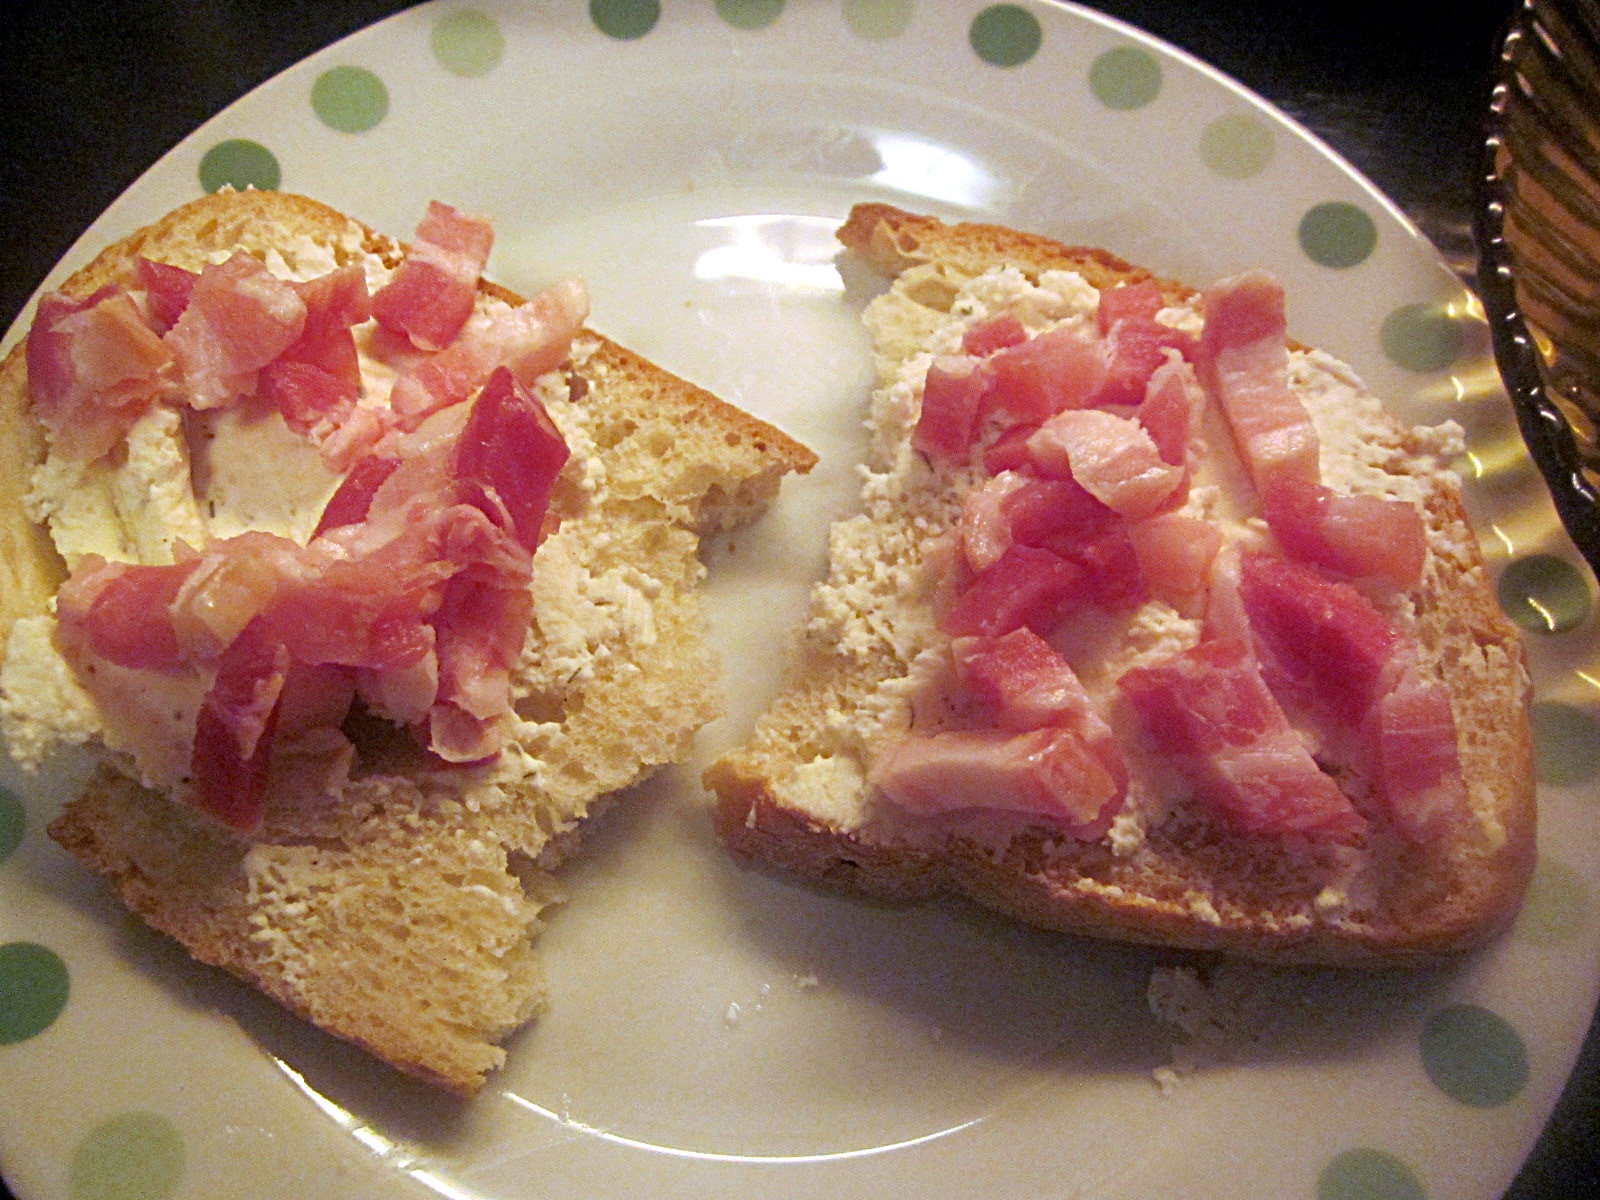 Sandviș cu brânzică Ceva fin, bacon și ciuperci